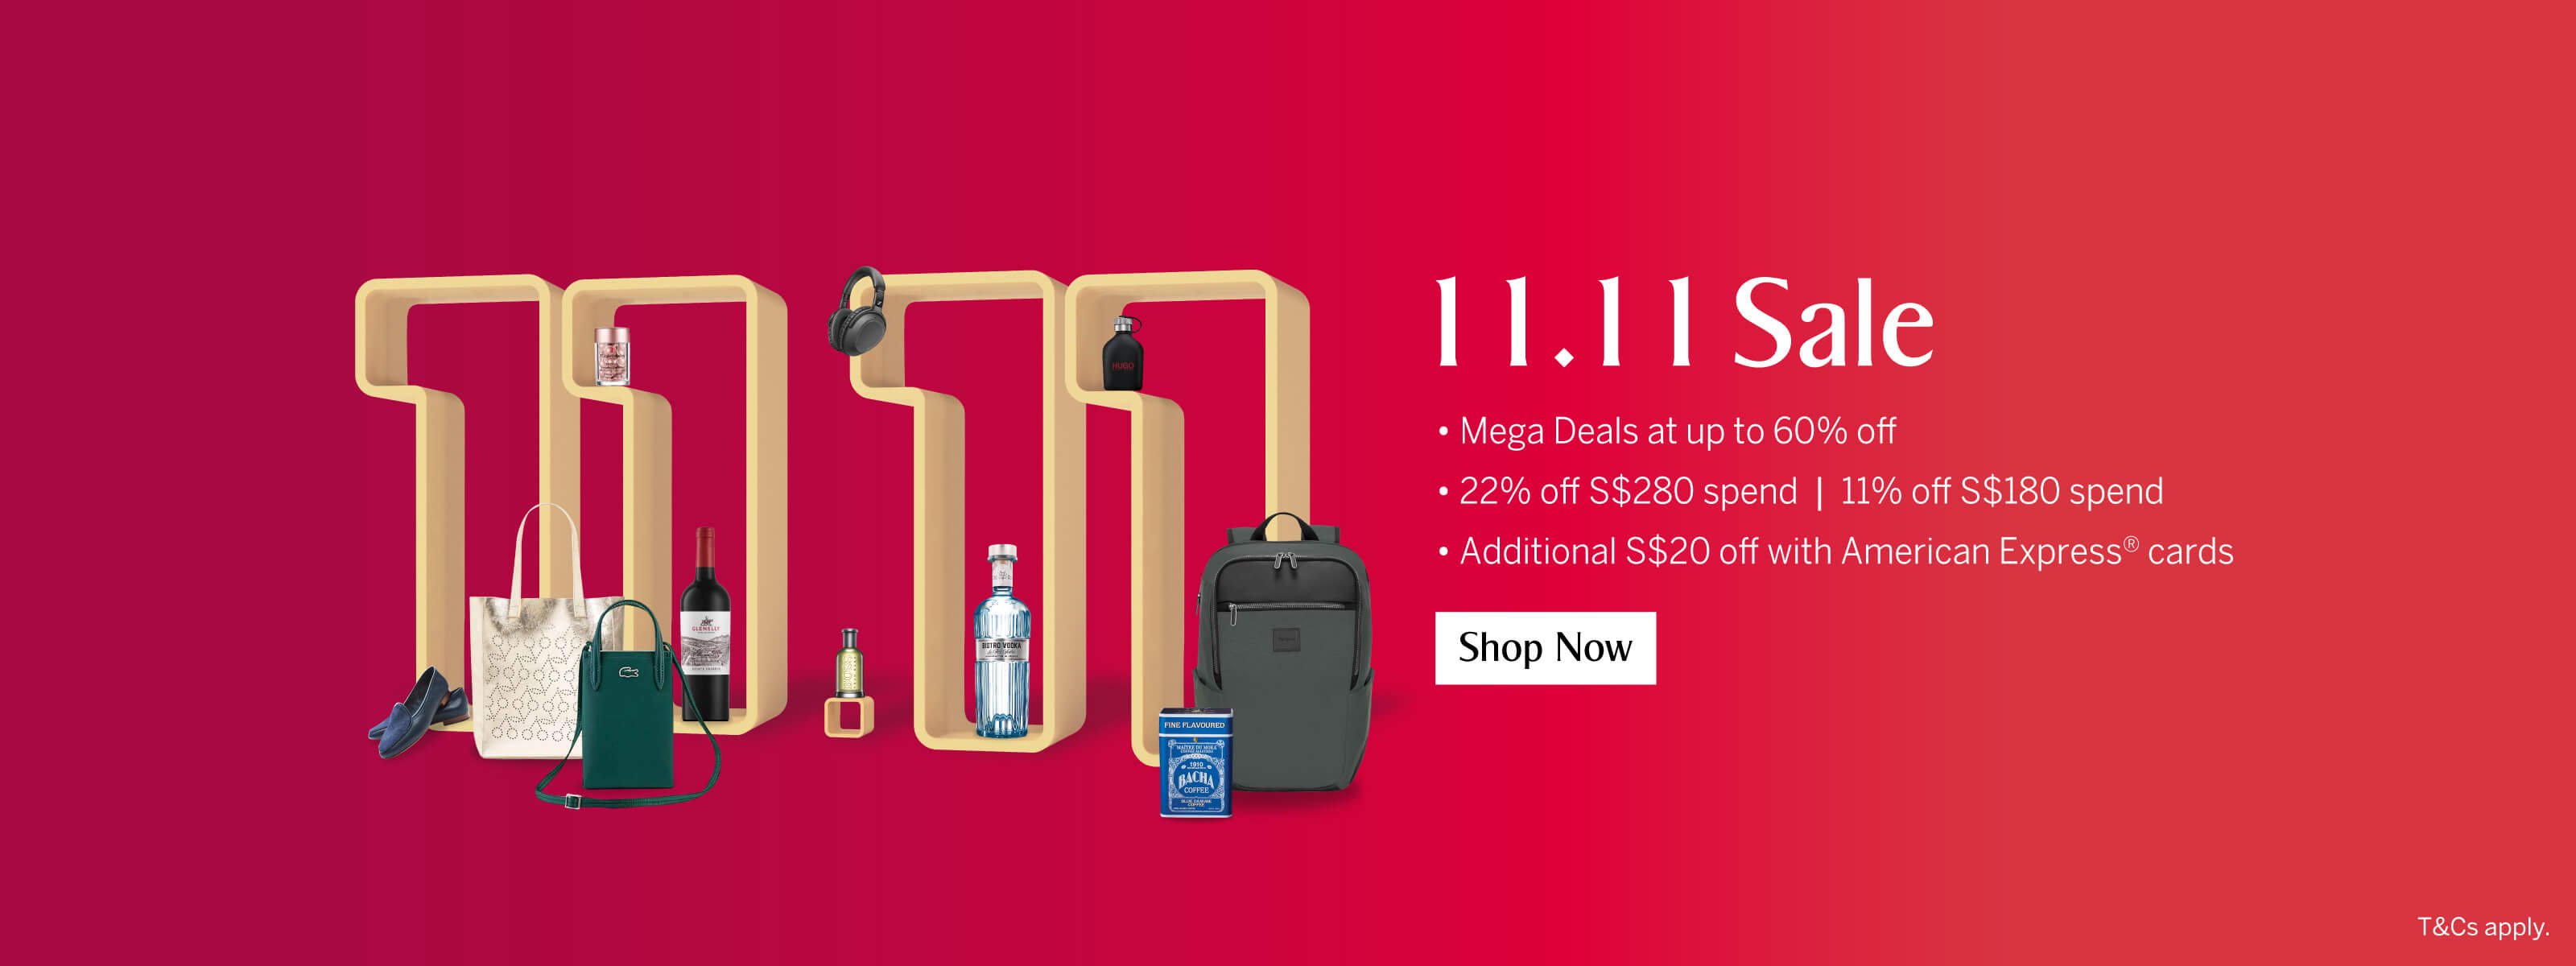 KrisShop's 11.11 Sale